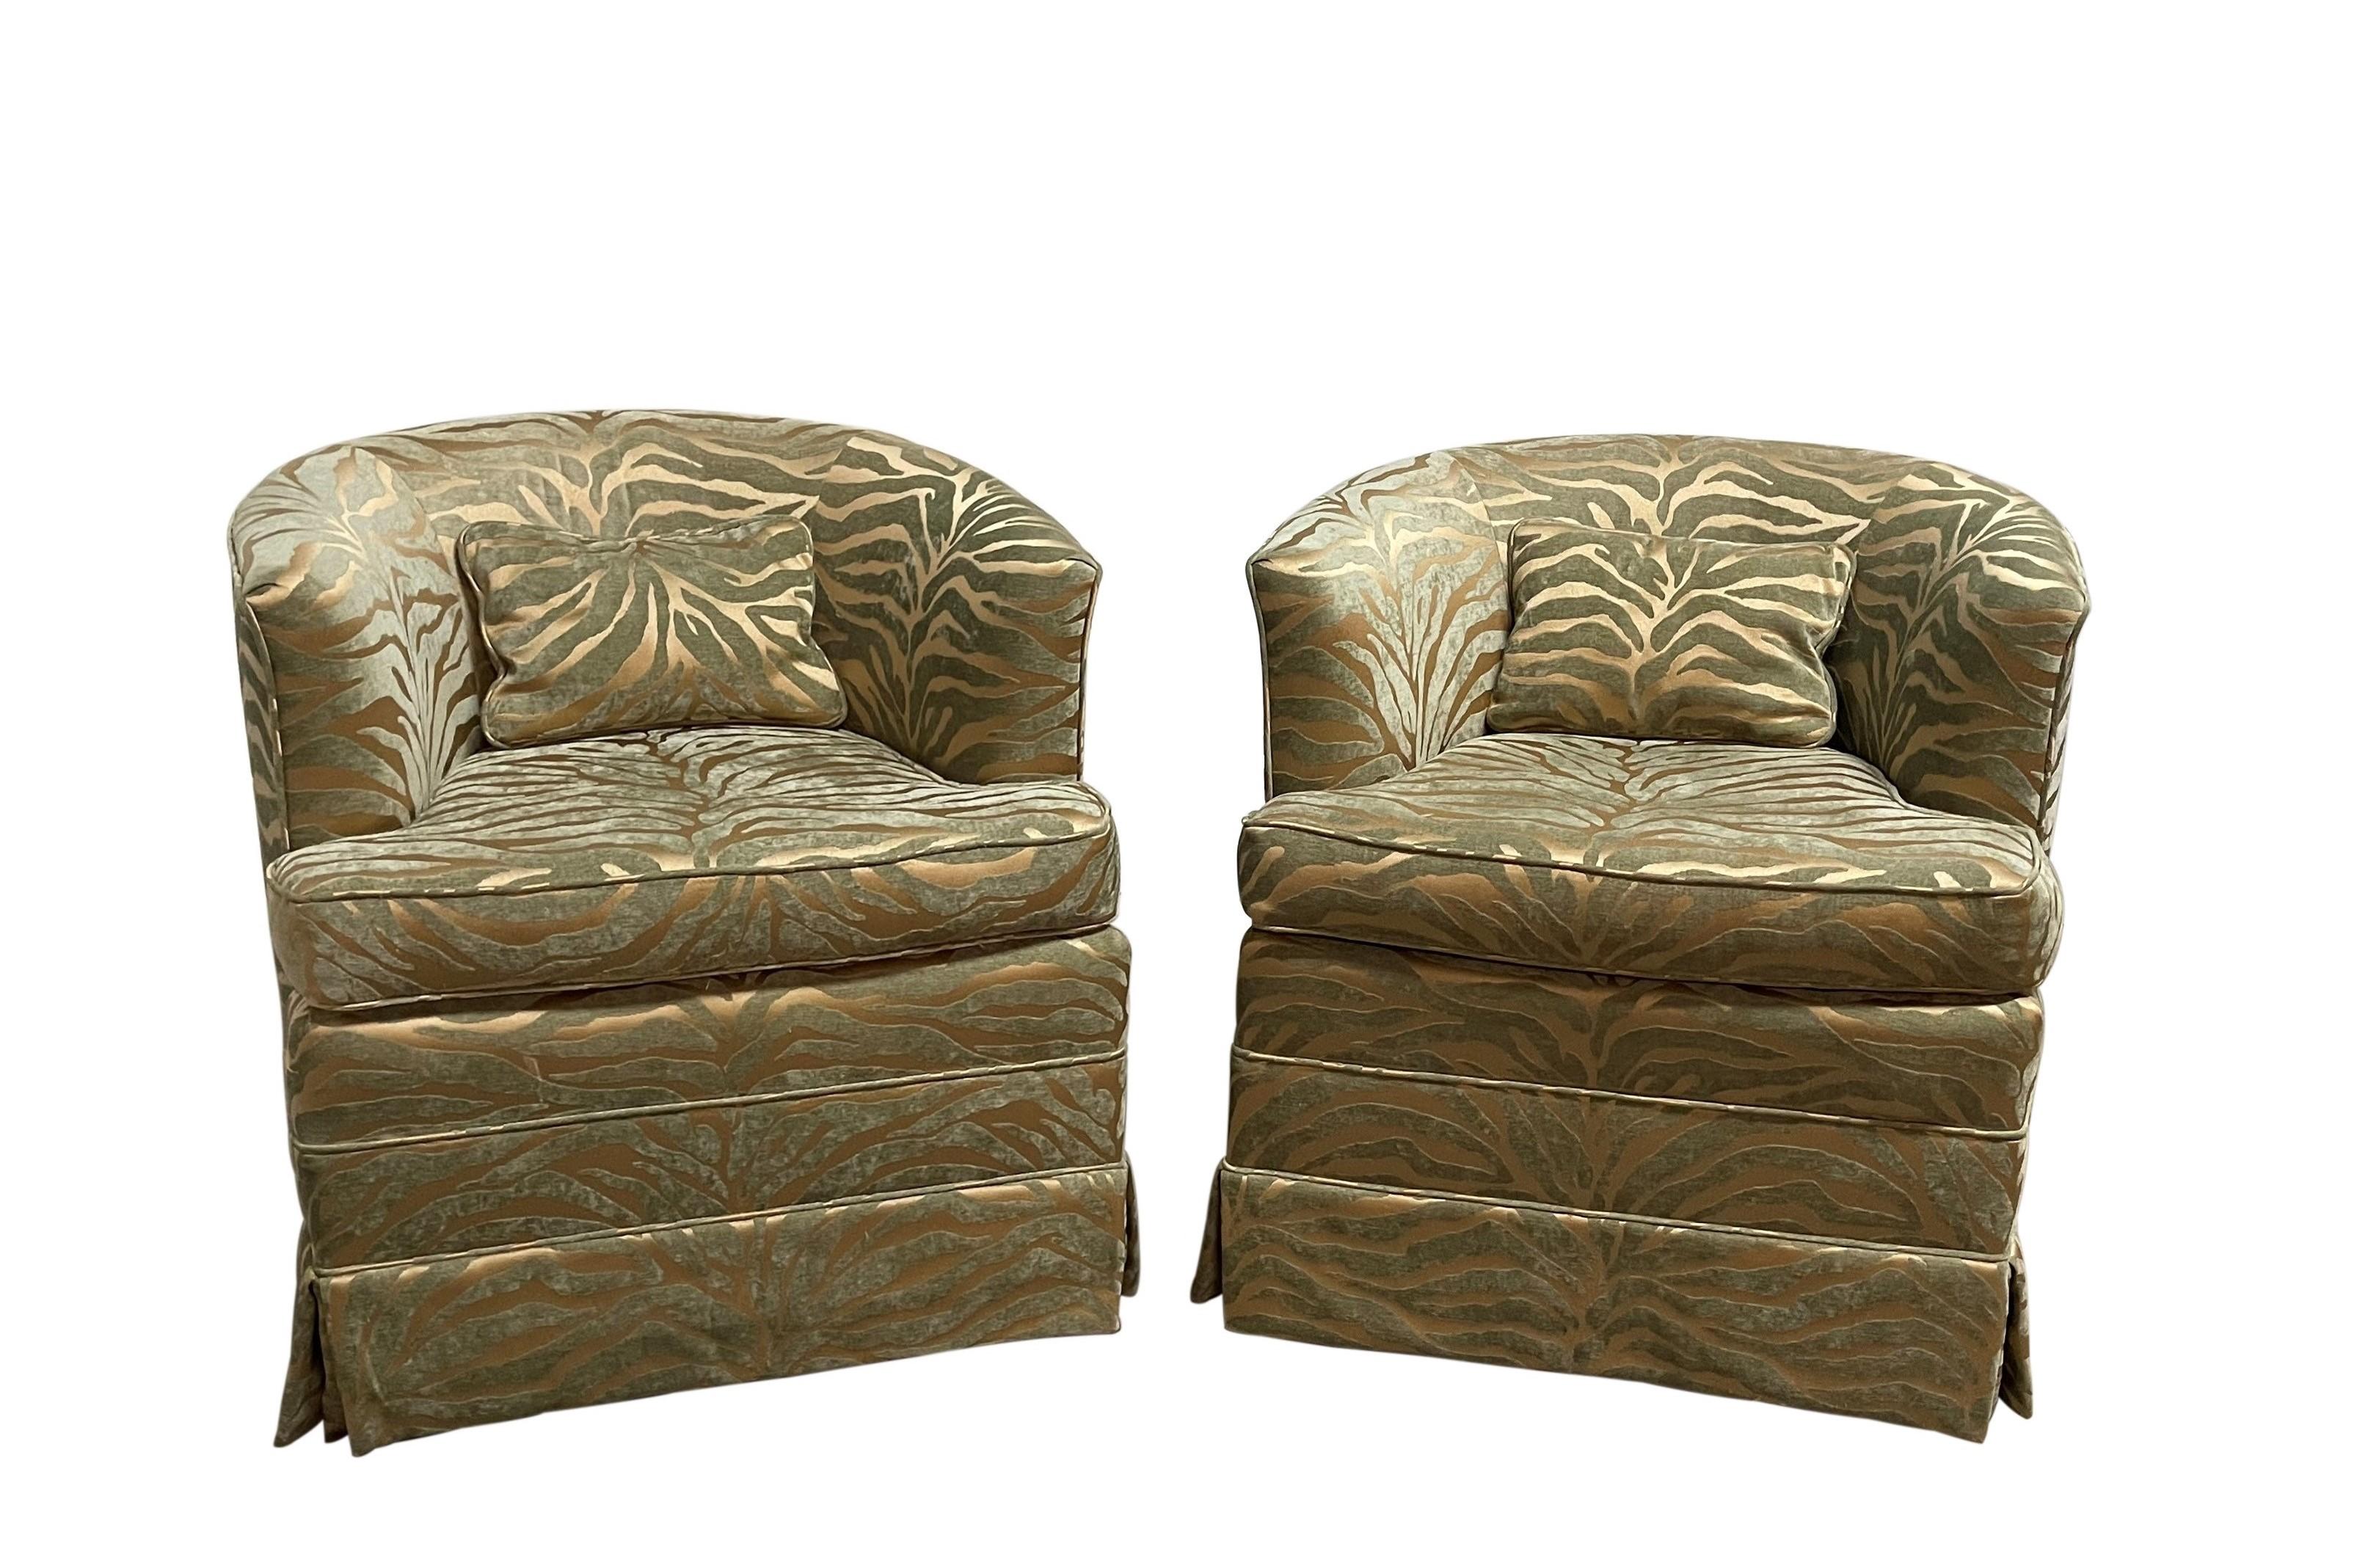 Zwei fabelhafte Milo Baughman Stil Barrel zurück Lounge-Stühle. Modernistische Drehstühle, gepolstert mit einem kühnen, hochgezogenen Samt, der einen auffallend luxuriösen Schimmer hat. Eine Schürze bedeckt einen vierbeinigen Metallsockel mit einer